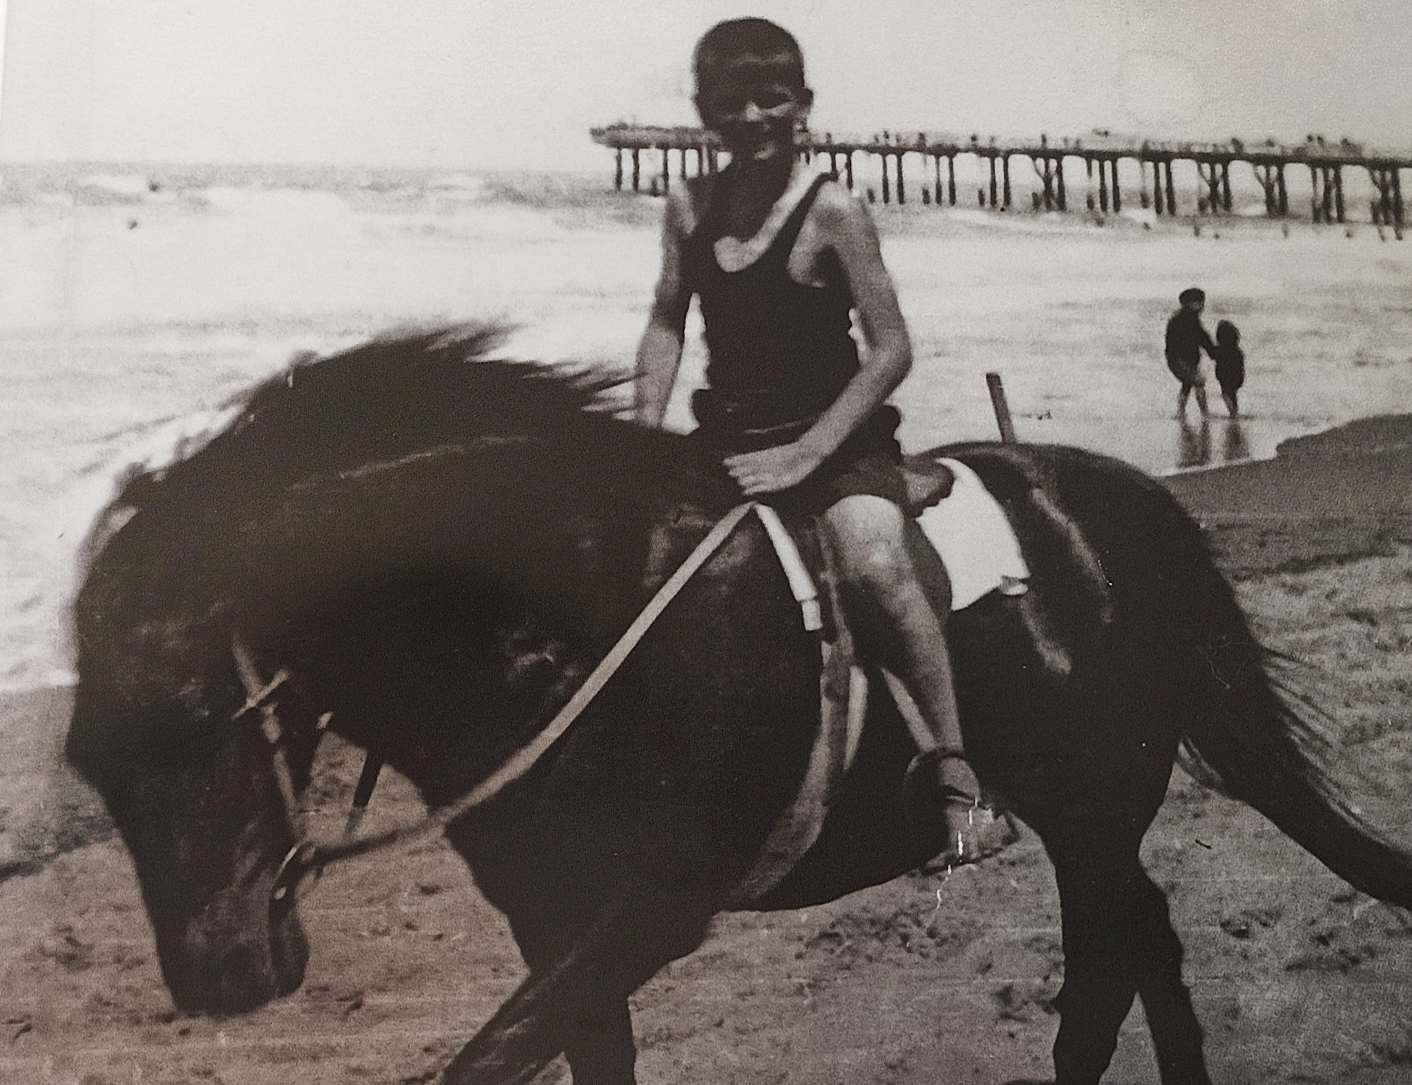 Boy on horse 1940